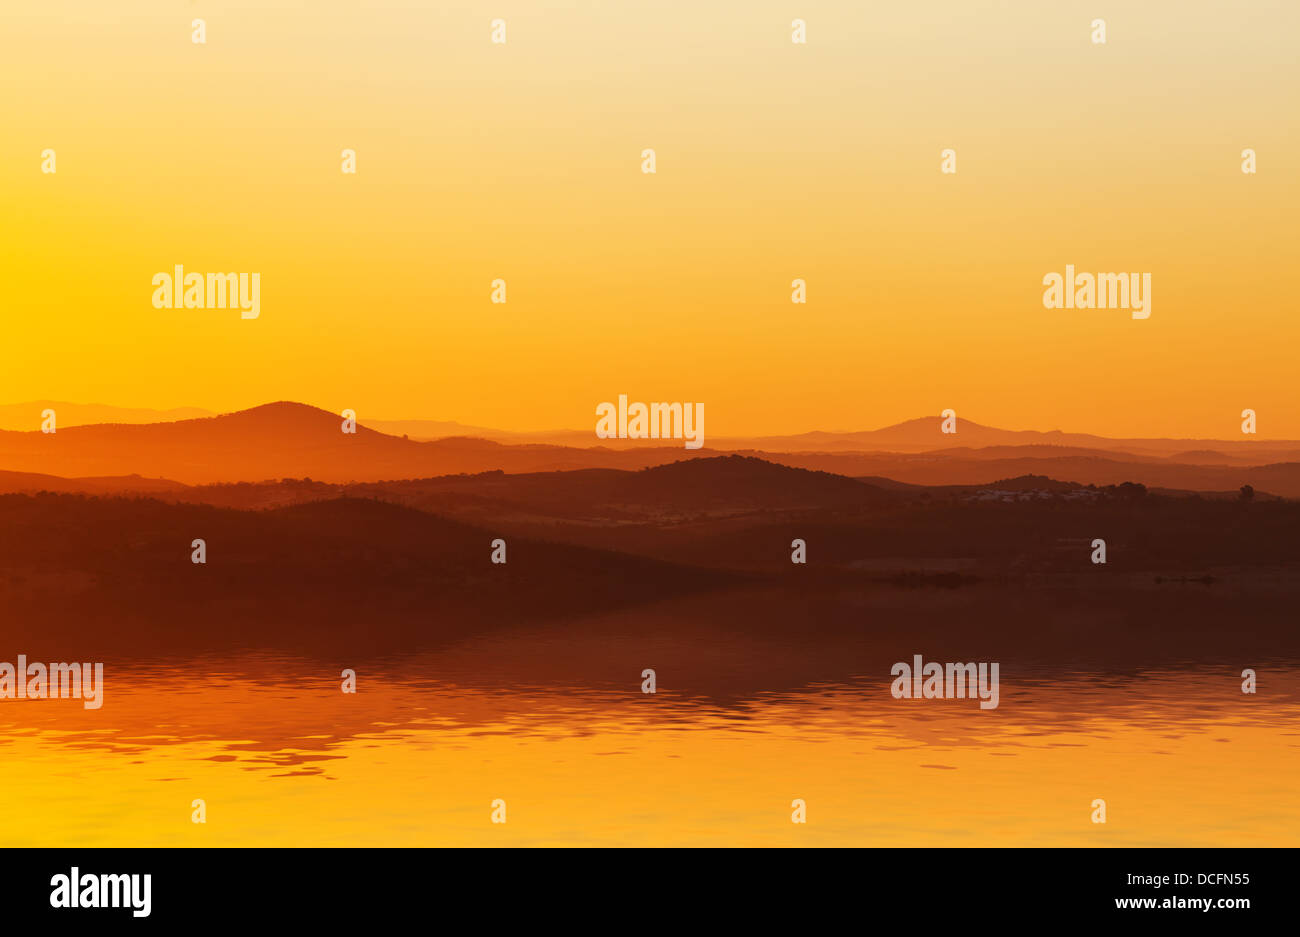 Spektakuläre orange sunset Einstellung hinter ein Mittelgebirge spiegelt sich in der Oberfläche des Wassers immer noch im Vordergrund Stockfoto